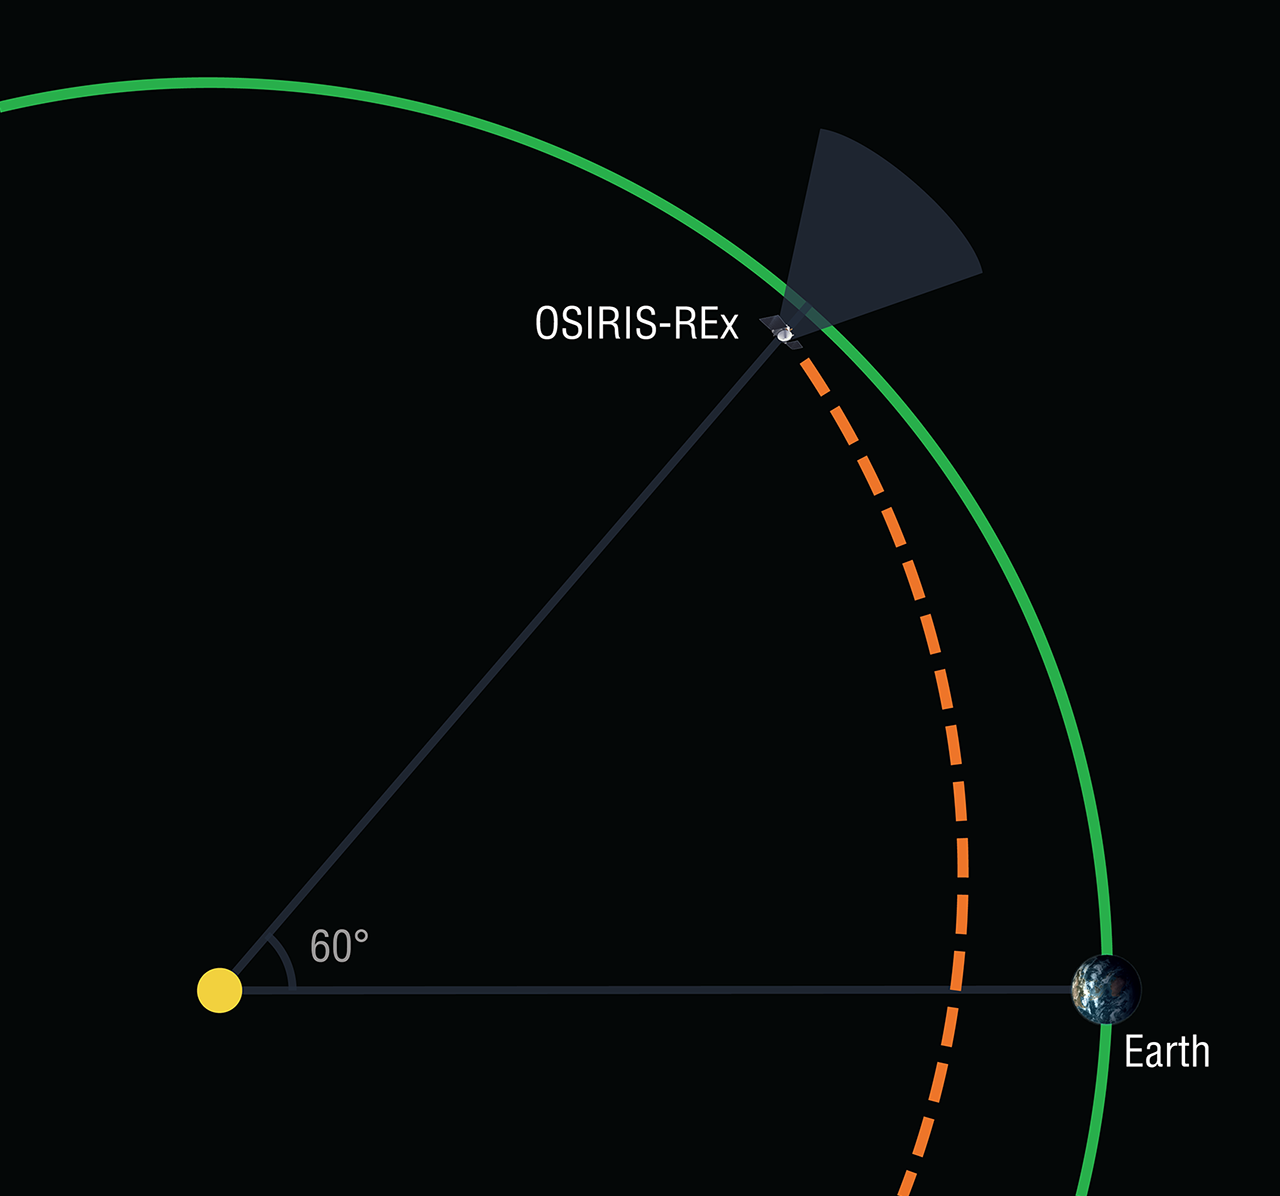 orbital paths and the sun on black